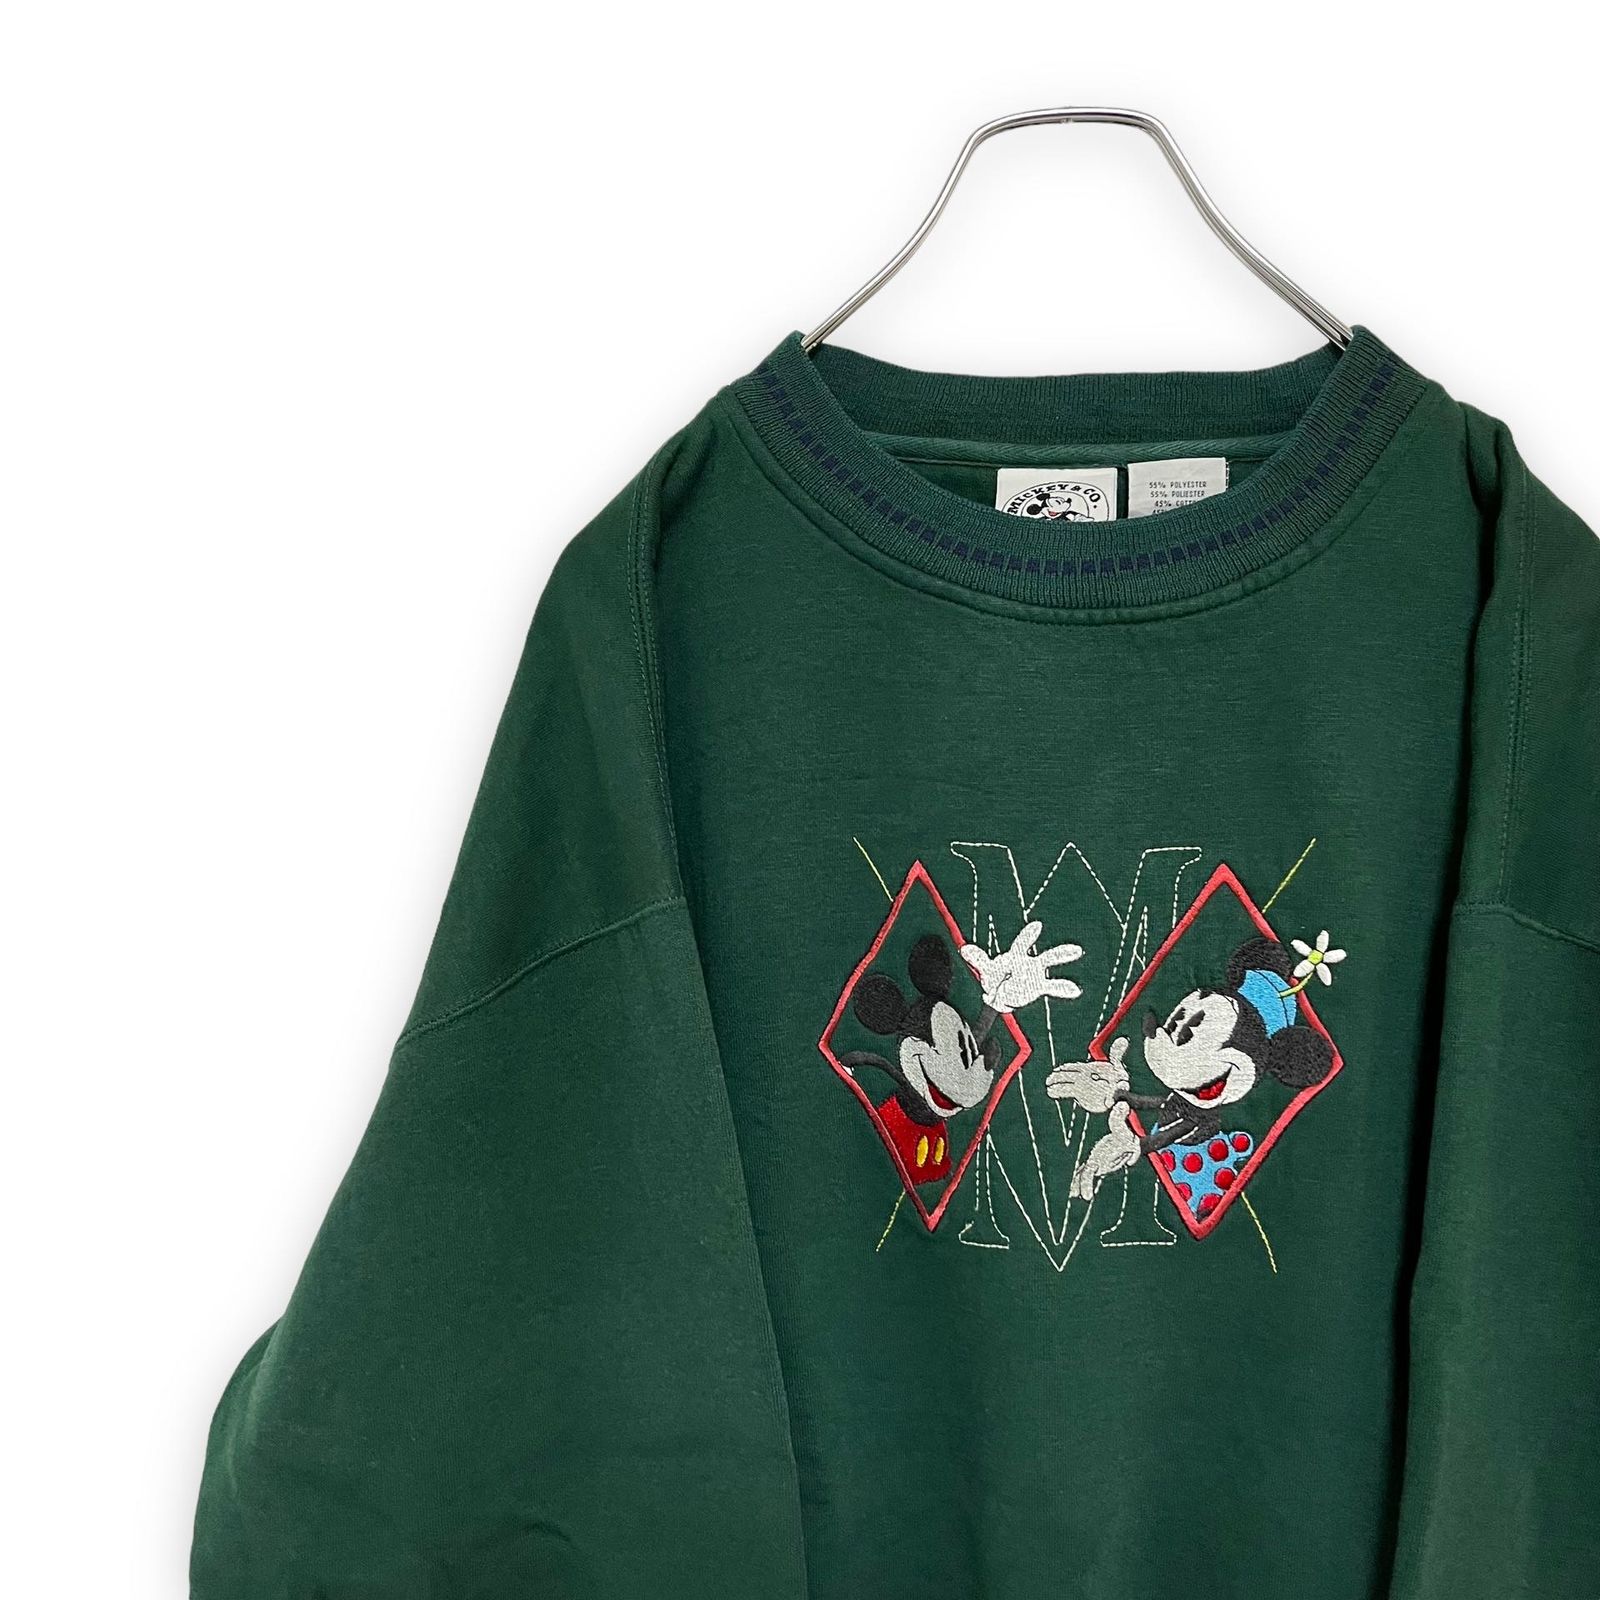 NEW得価 Disney - ミッキー 刺繍 スウェット トレーナー 緑色 メンズM